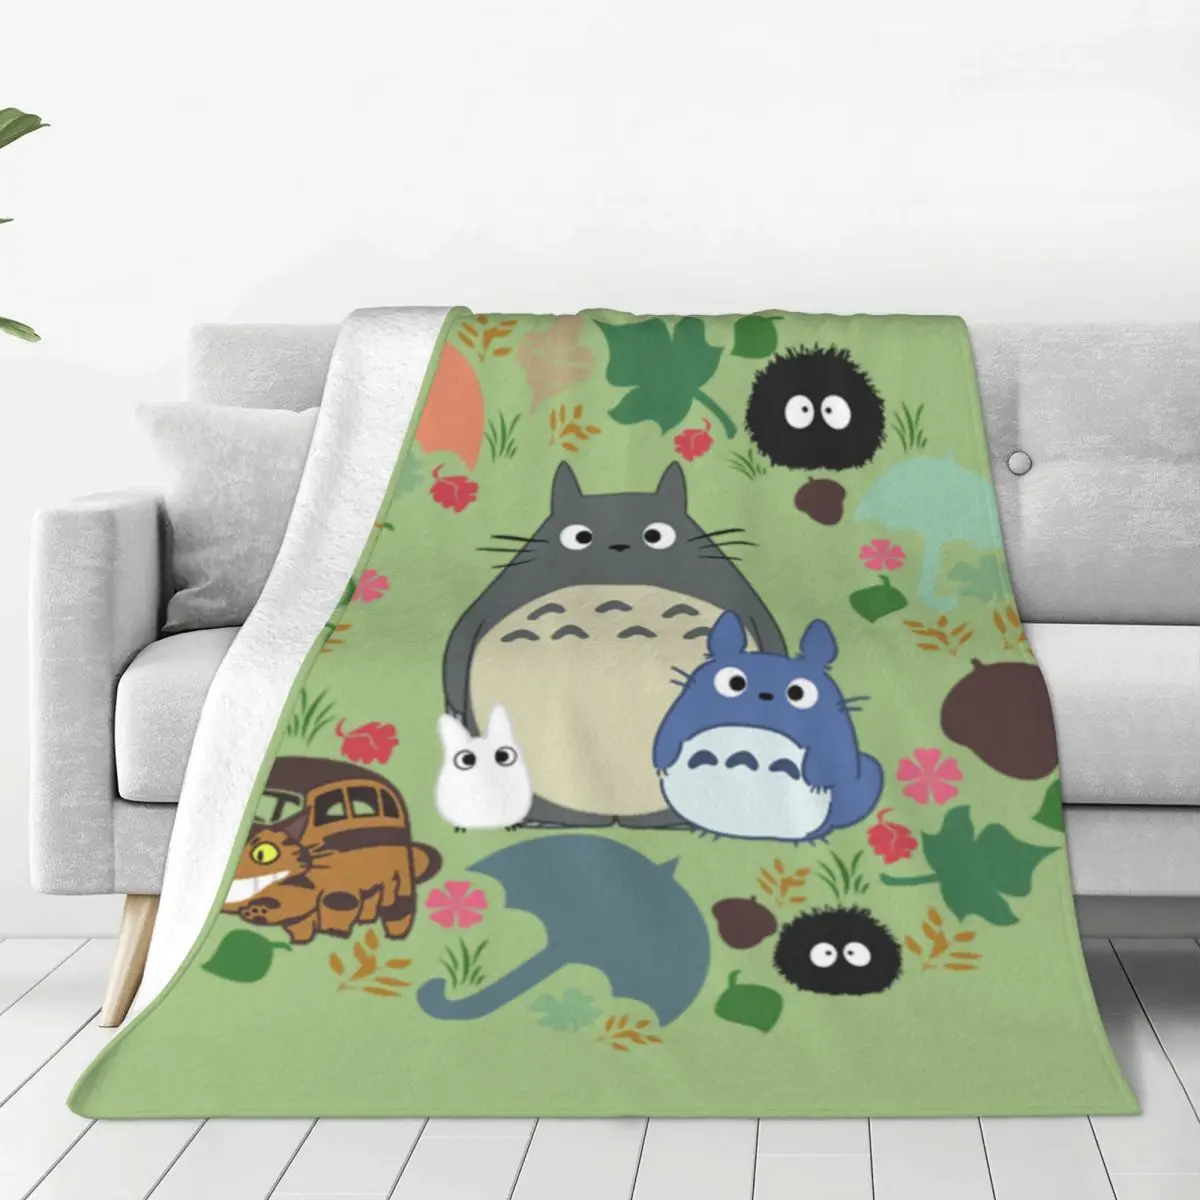 

Супермягкое одеяло My Neighbor Totoro, зеленое дорожное покрывало из японского фильма, весеннее дизайнерское Фланелевое покрывало для дивана и кровати